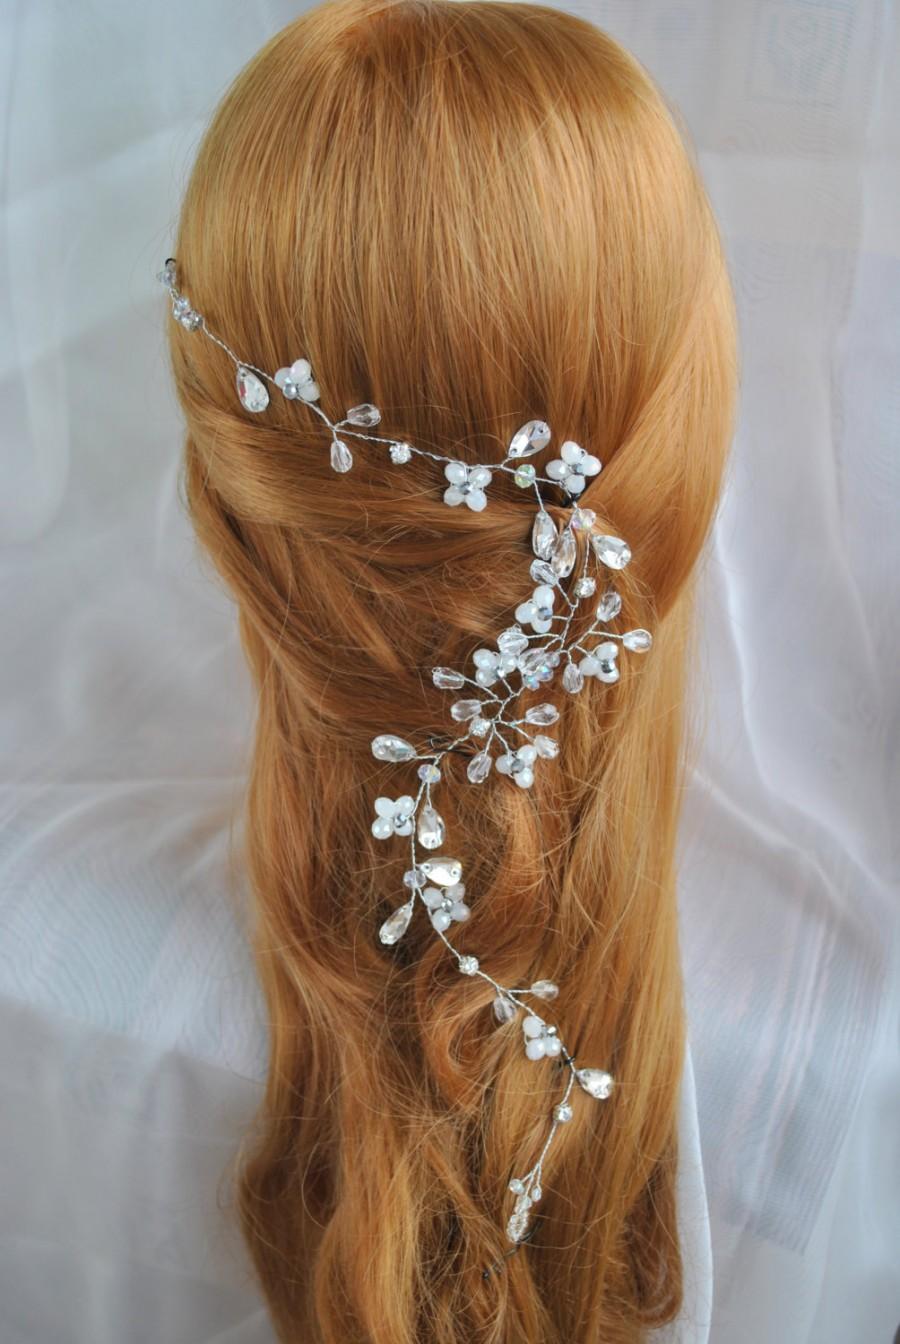 Mariage - bridal hair vine, wedding hair vine, bohemian, hair vine, bridal hair piece headpiece wedding hair accessories wedding hair piece headband